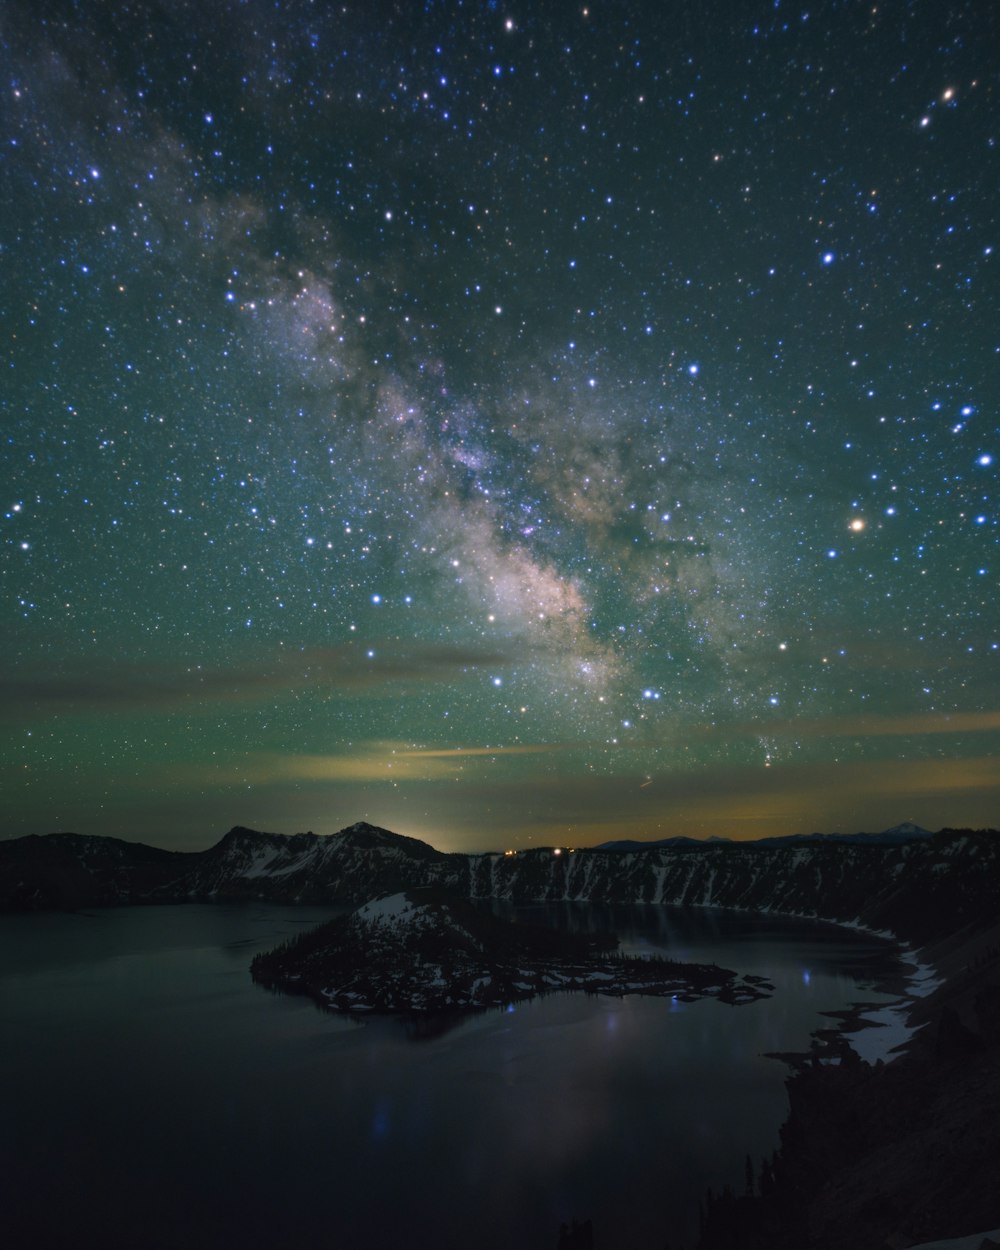 Le ciel nocturne avec des étoiles au-dessus d’un lac